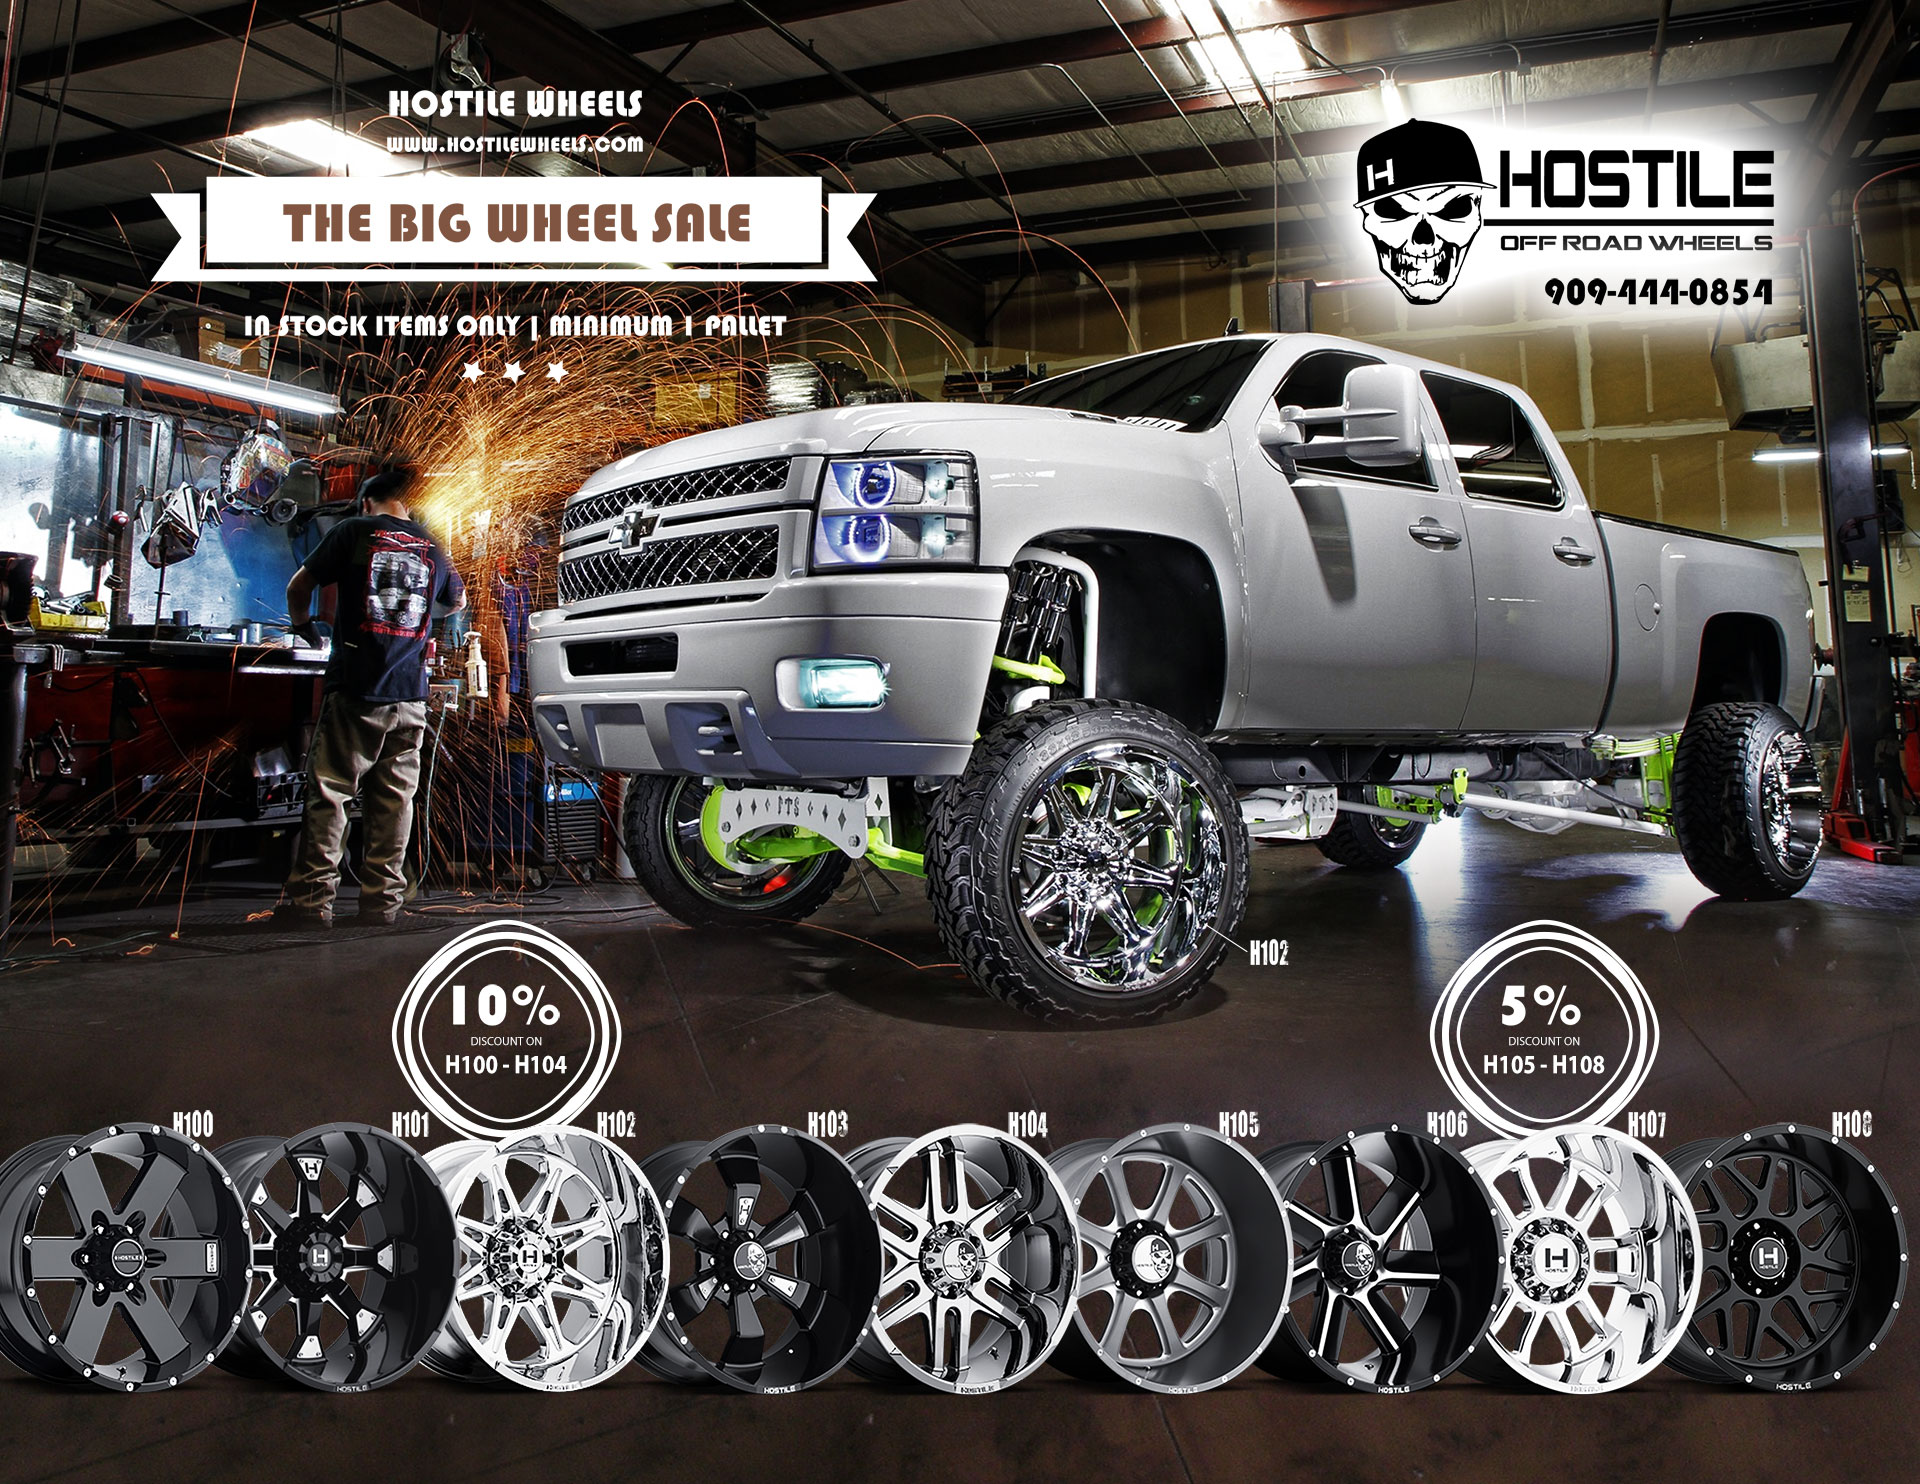 Hostile Wheels Promo